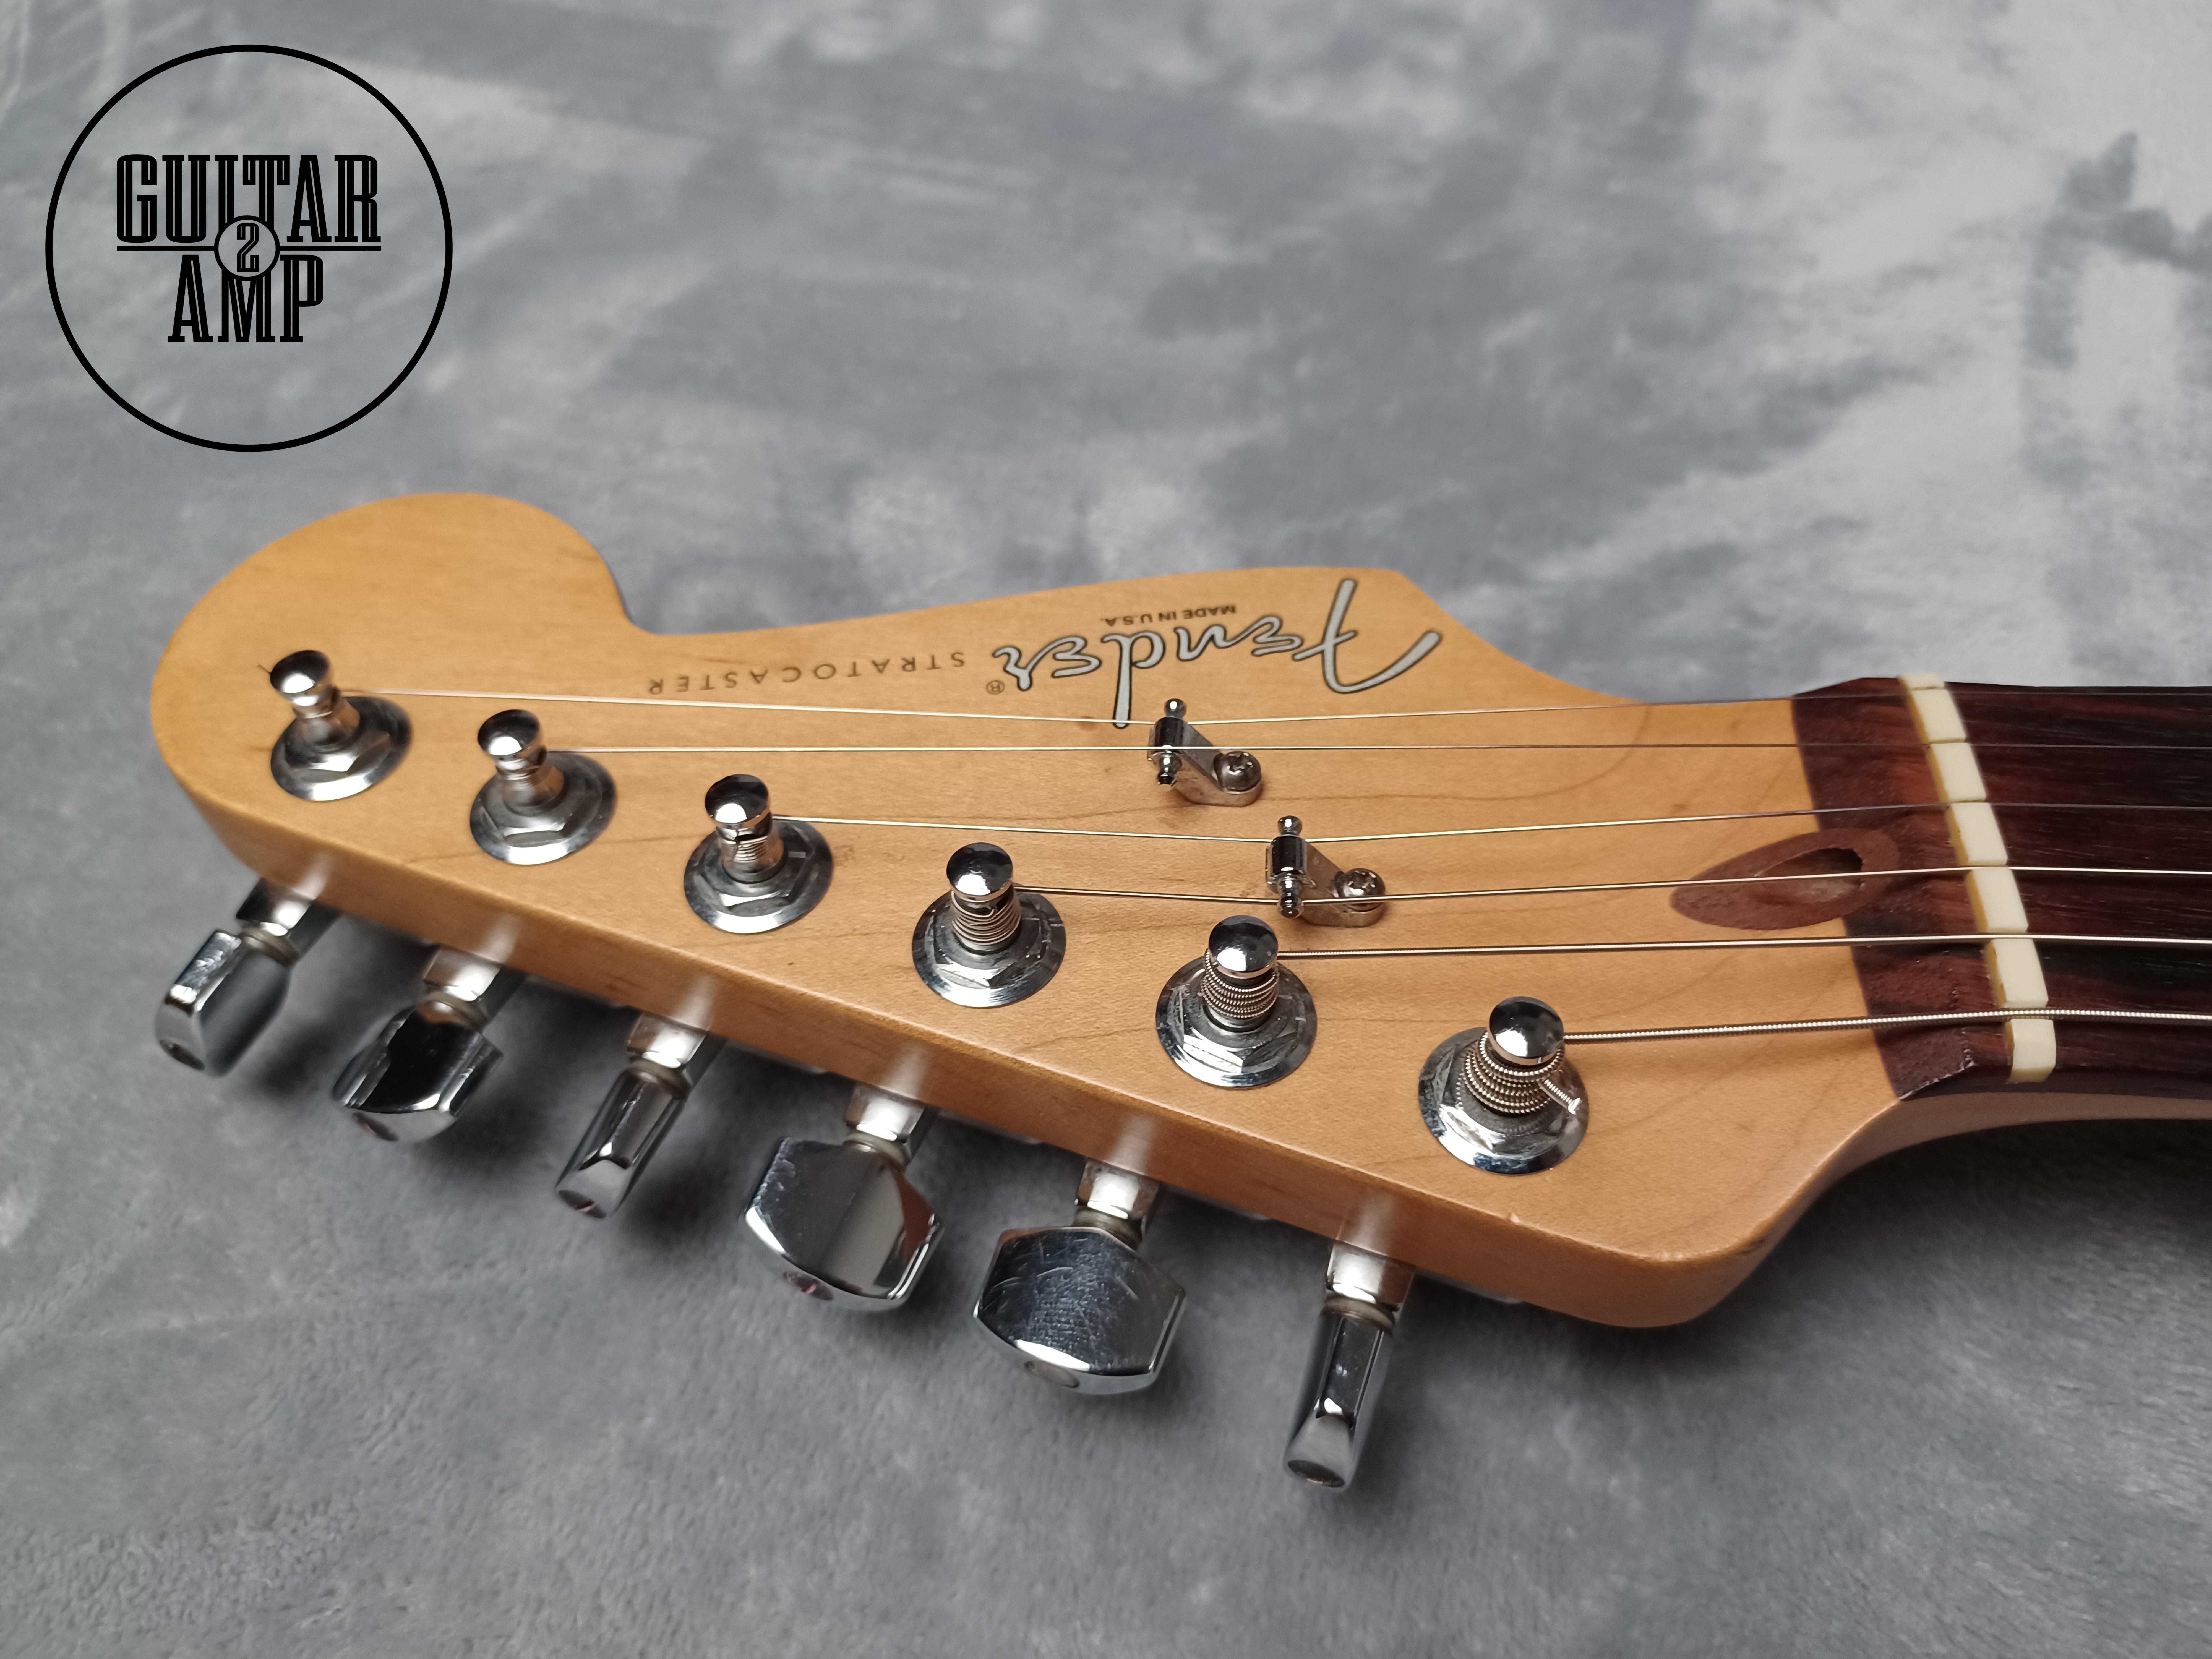 1997 Fender American Standard Stratocaster Sunburst